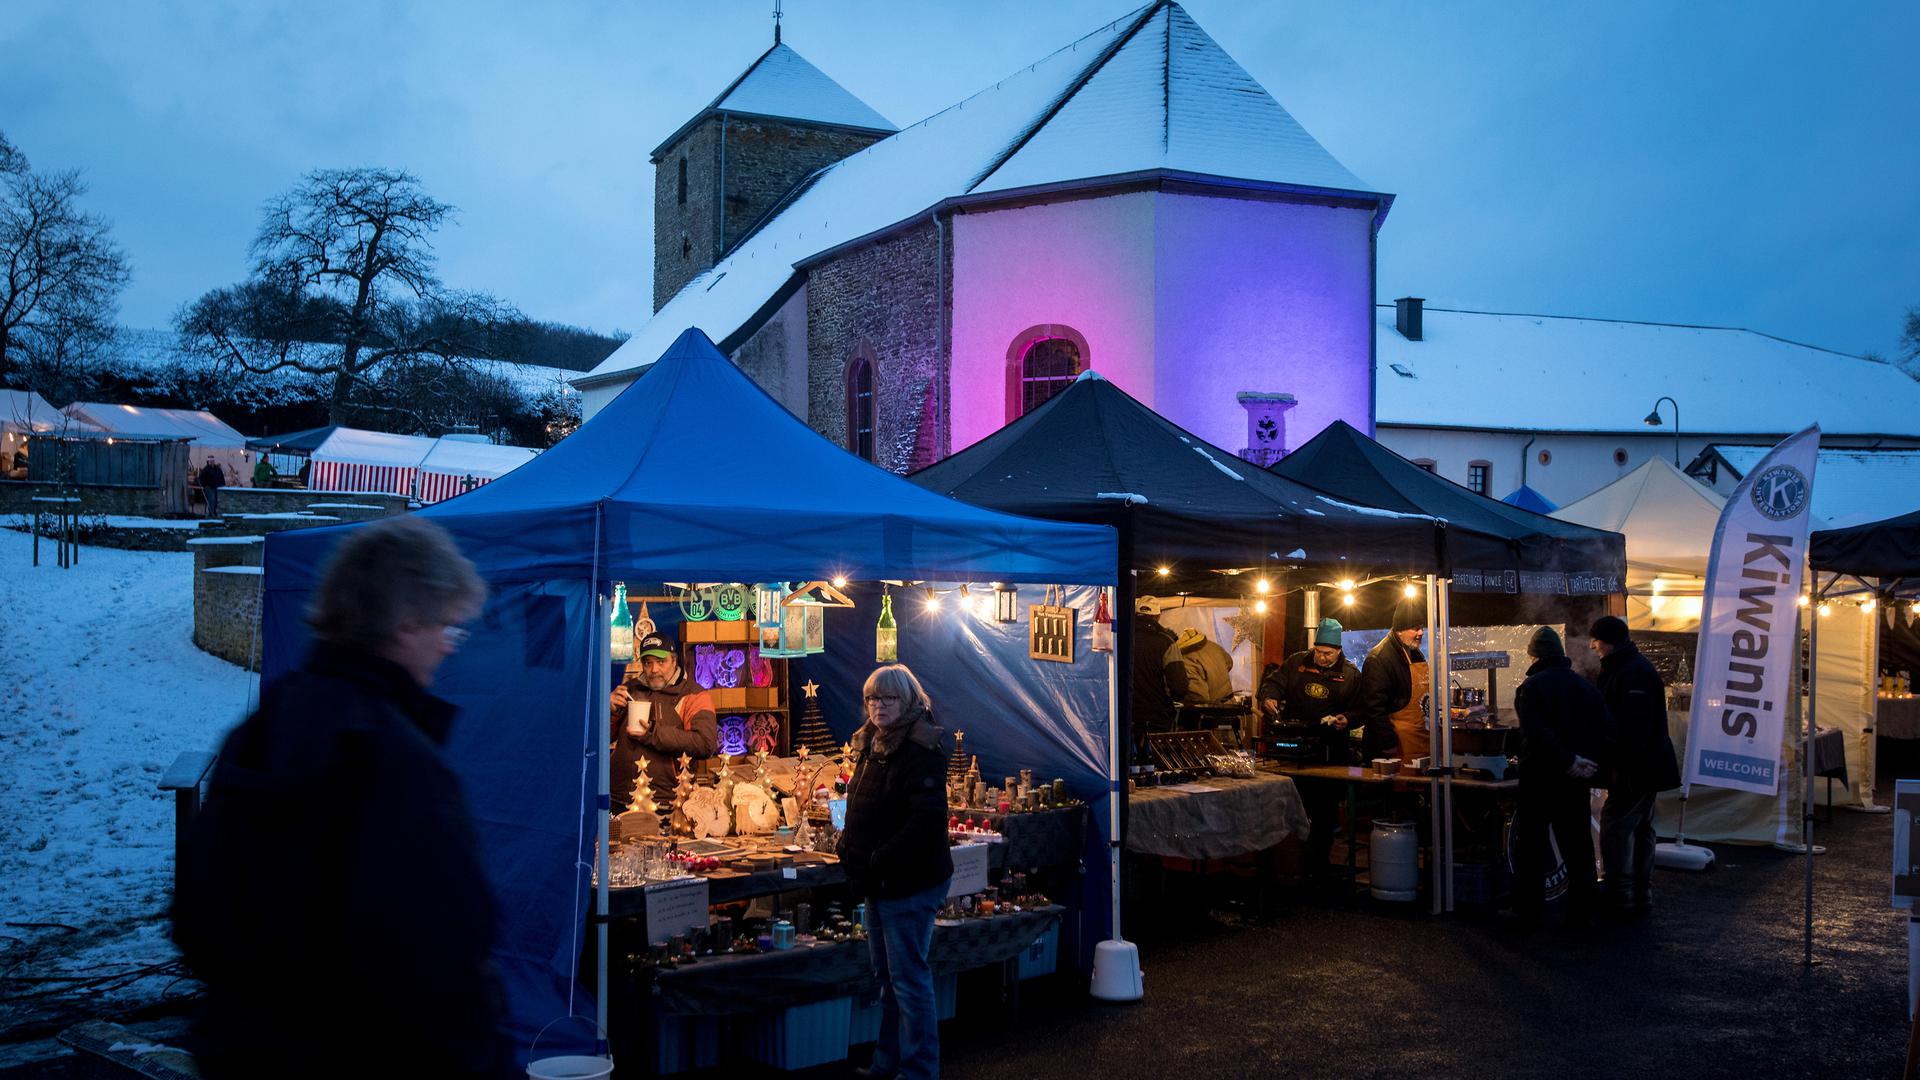 Ce samedi, le marché de l'Avent aura à nouveau lieu à Rindschleiden. Cette photo date de 2017.